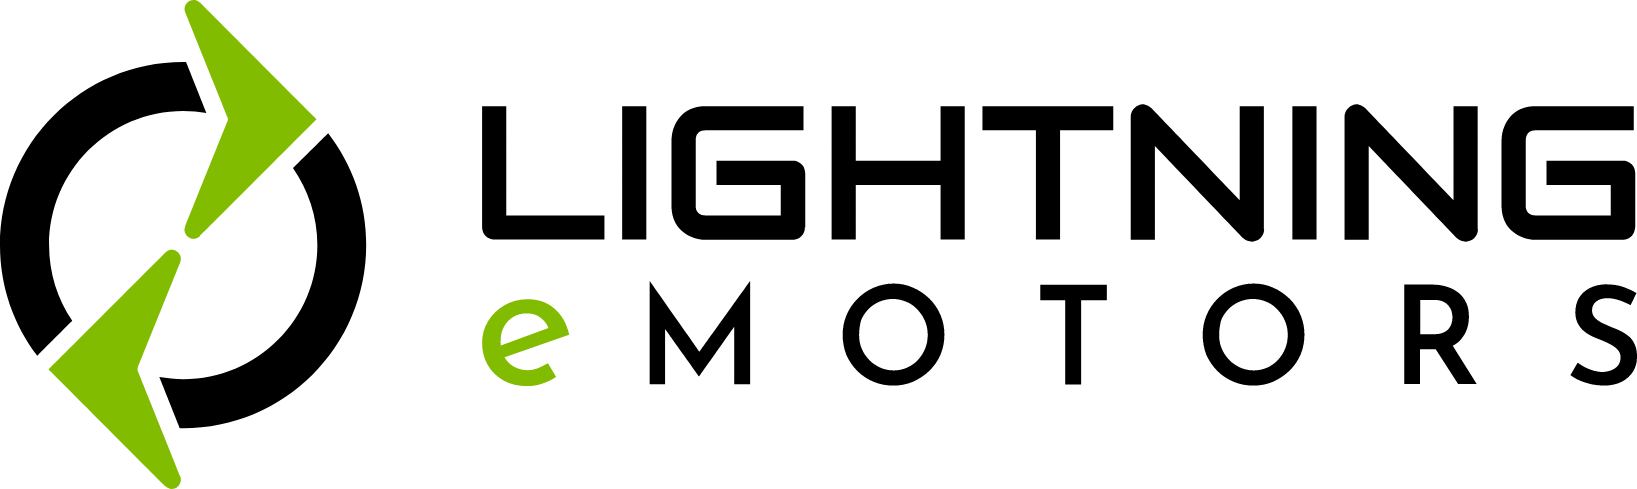 Lightning eMotors logo large (transparent PNG)